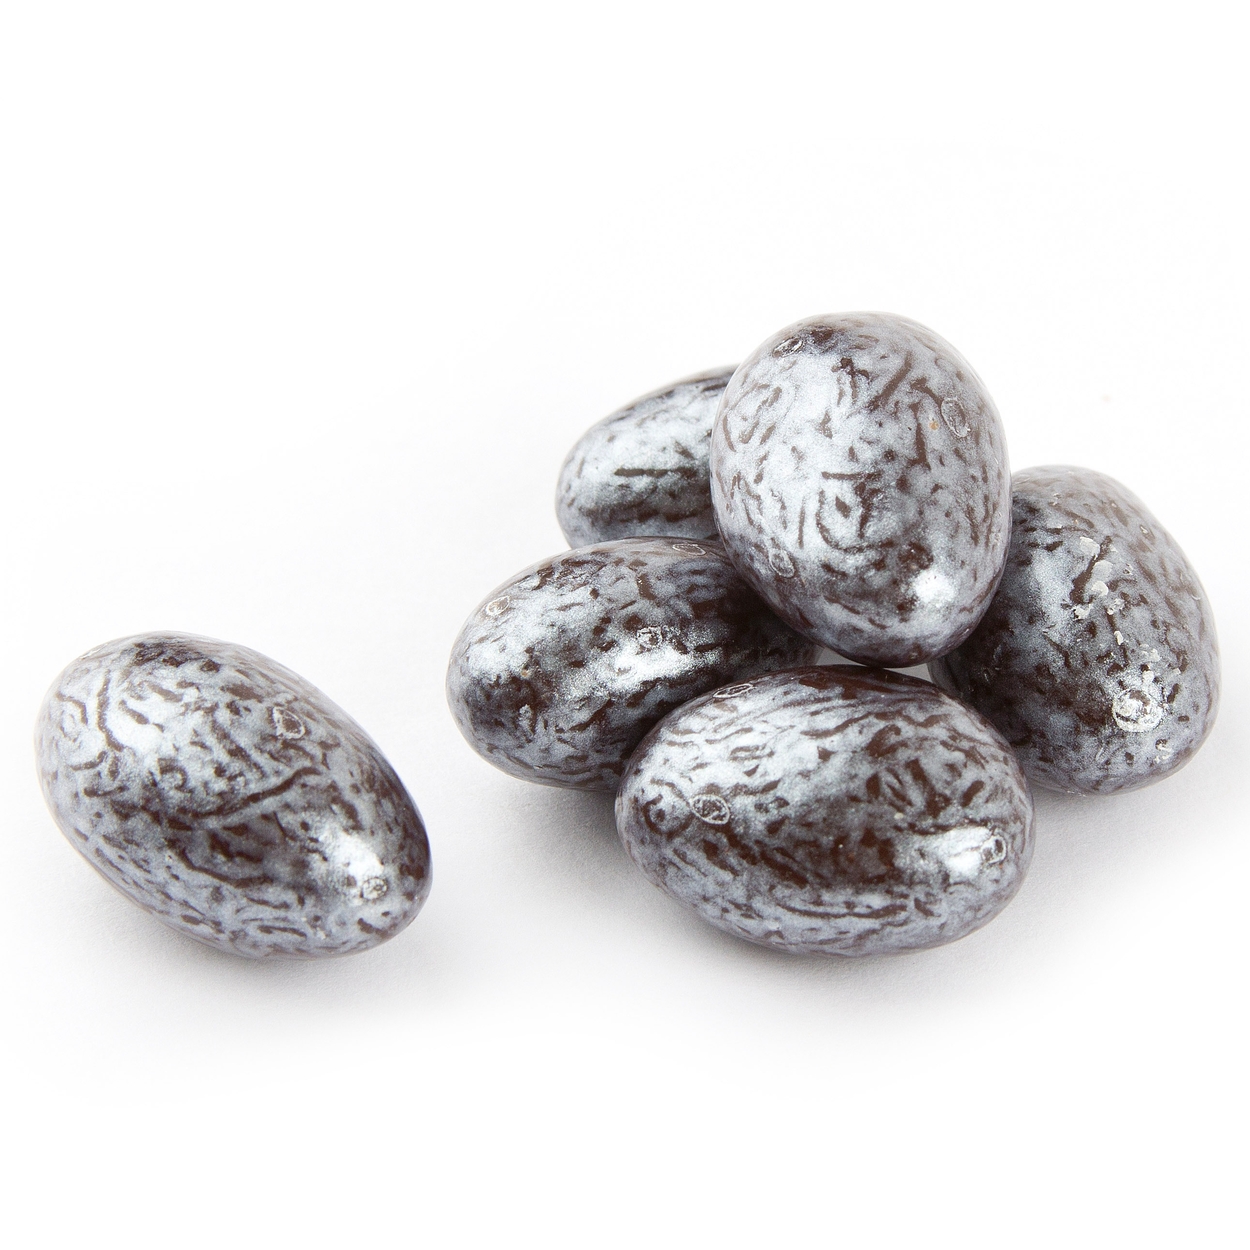 M&M Dark Chocolate - 24CT • Chocolate Mini Pack's • Bulk Chocolate • Oh!  Nuts®